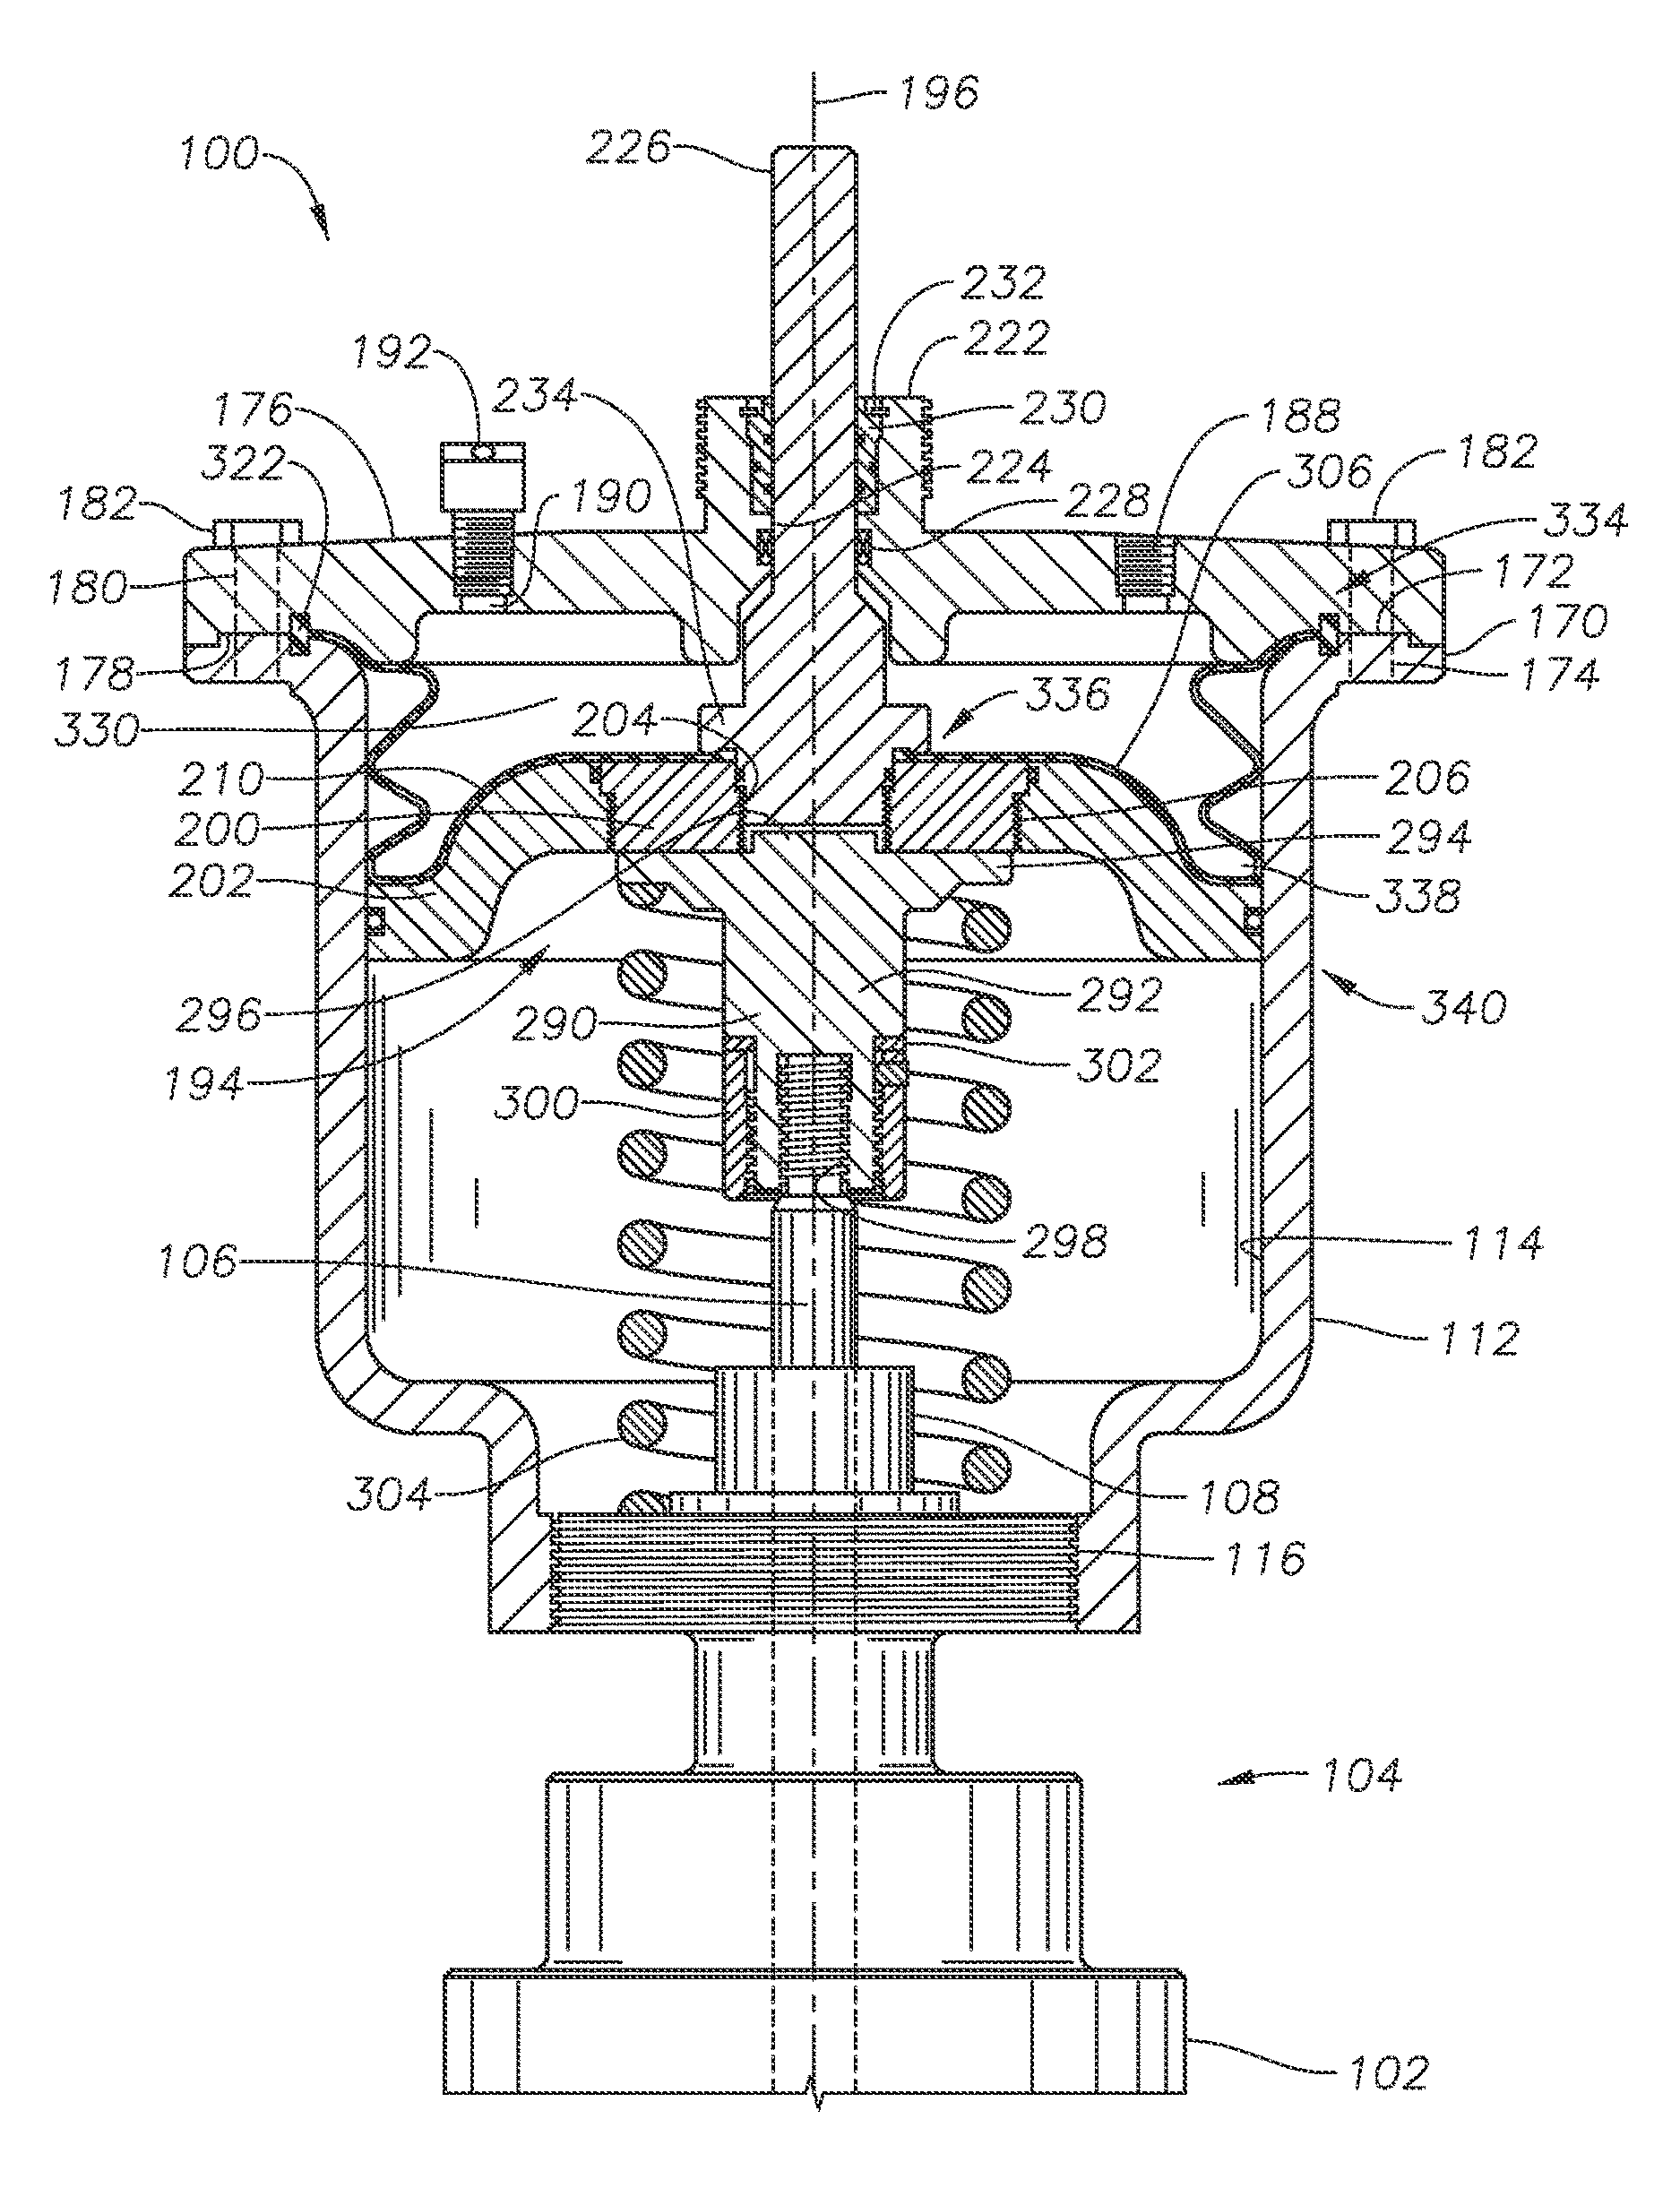 Combination diaphragm piston actuator